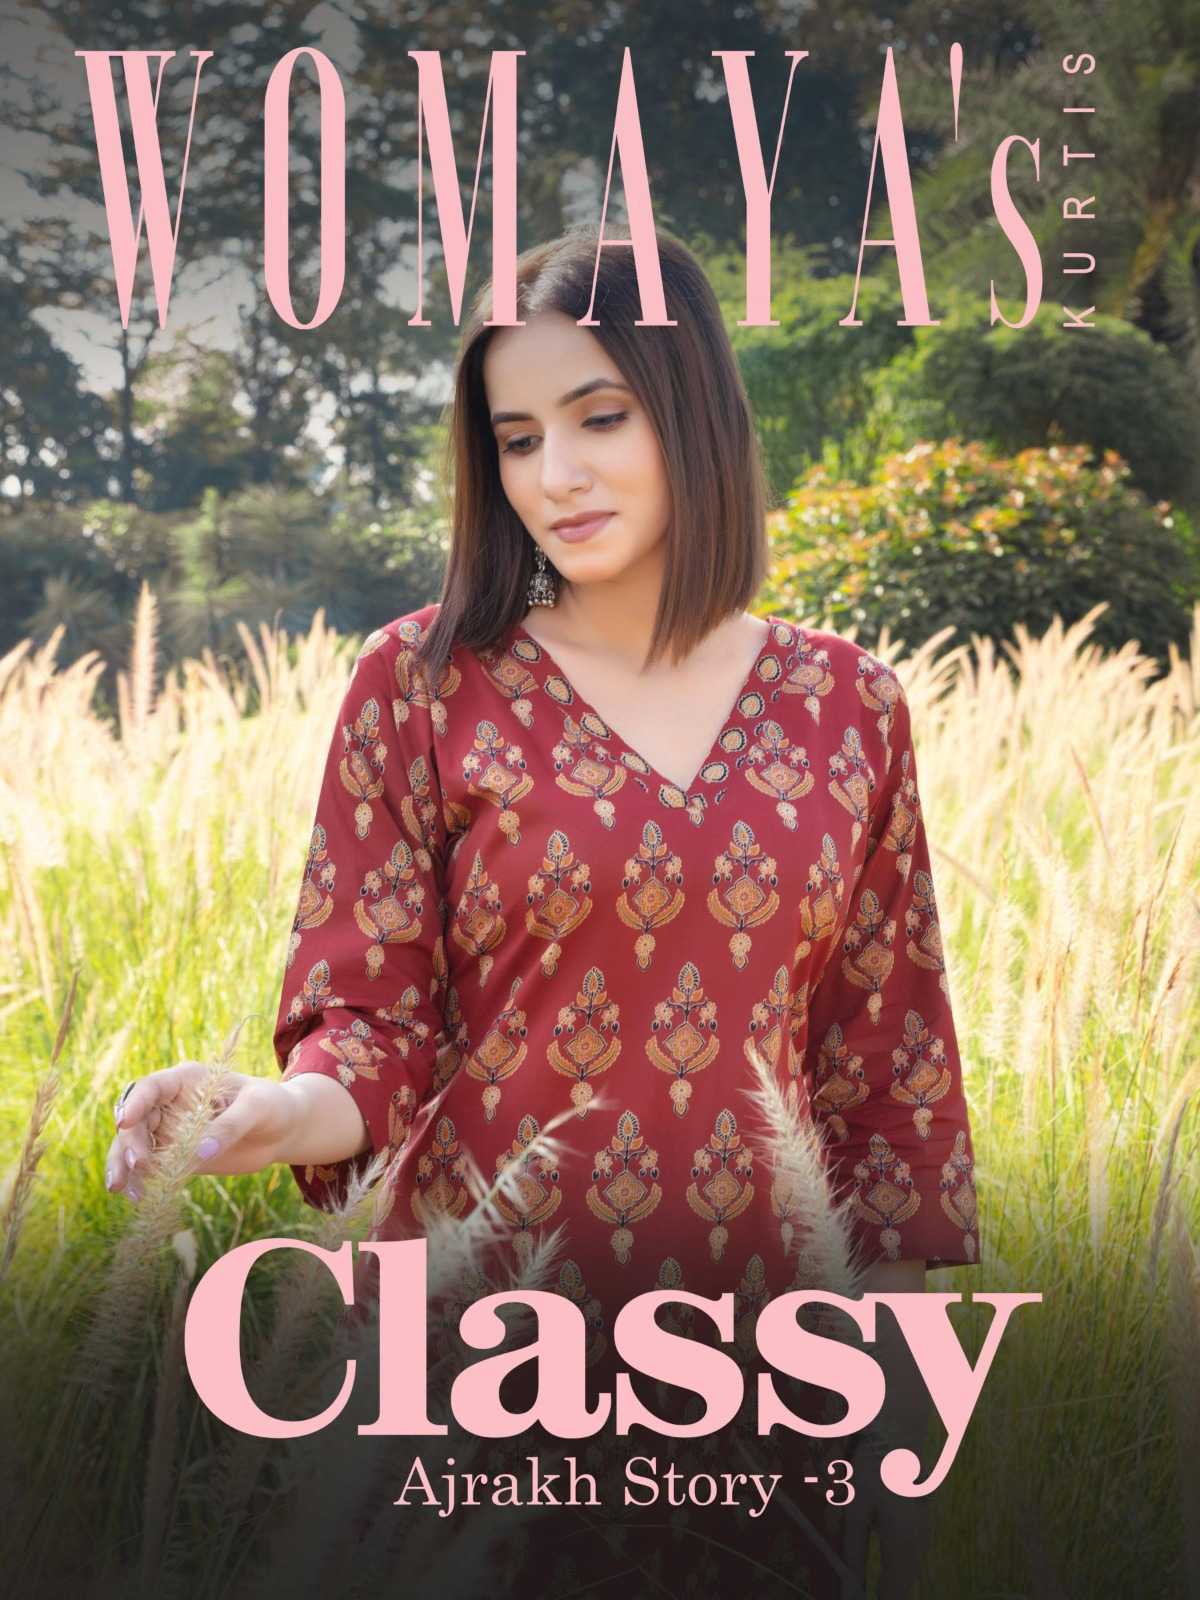 womaya kurtis classy ajrakh story vol 3 readymade 3 pcs cotton combo set